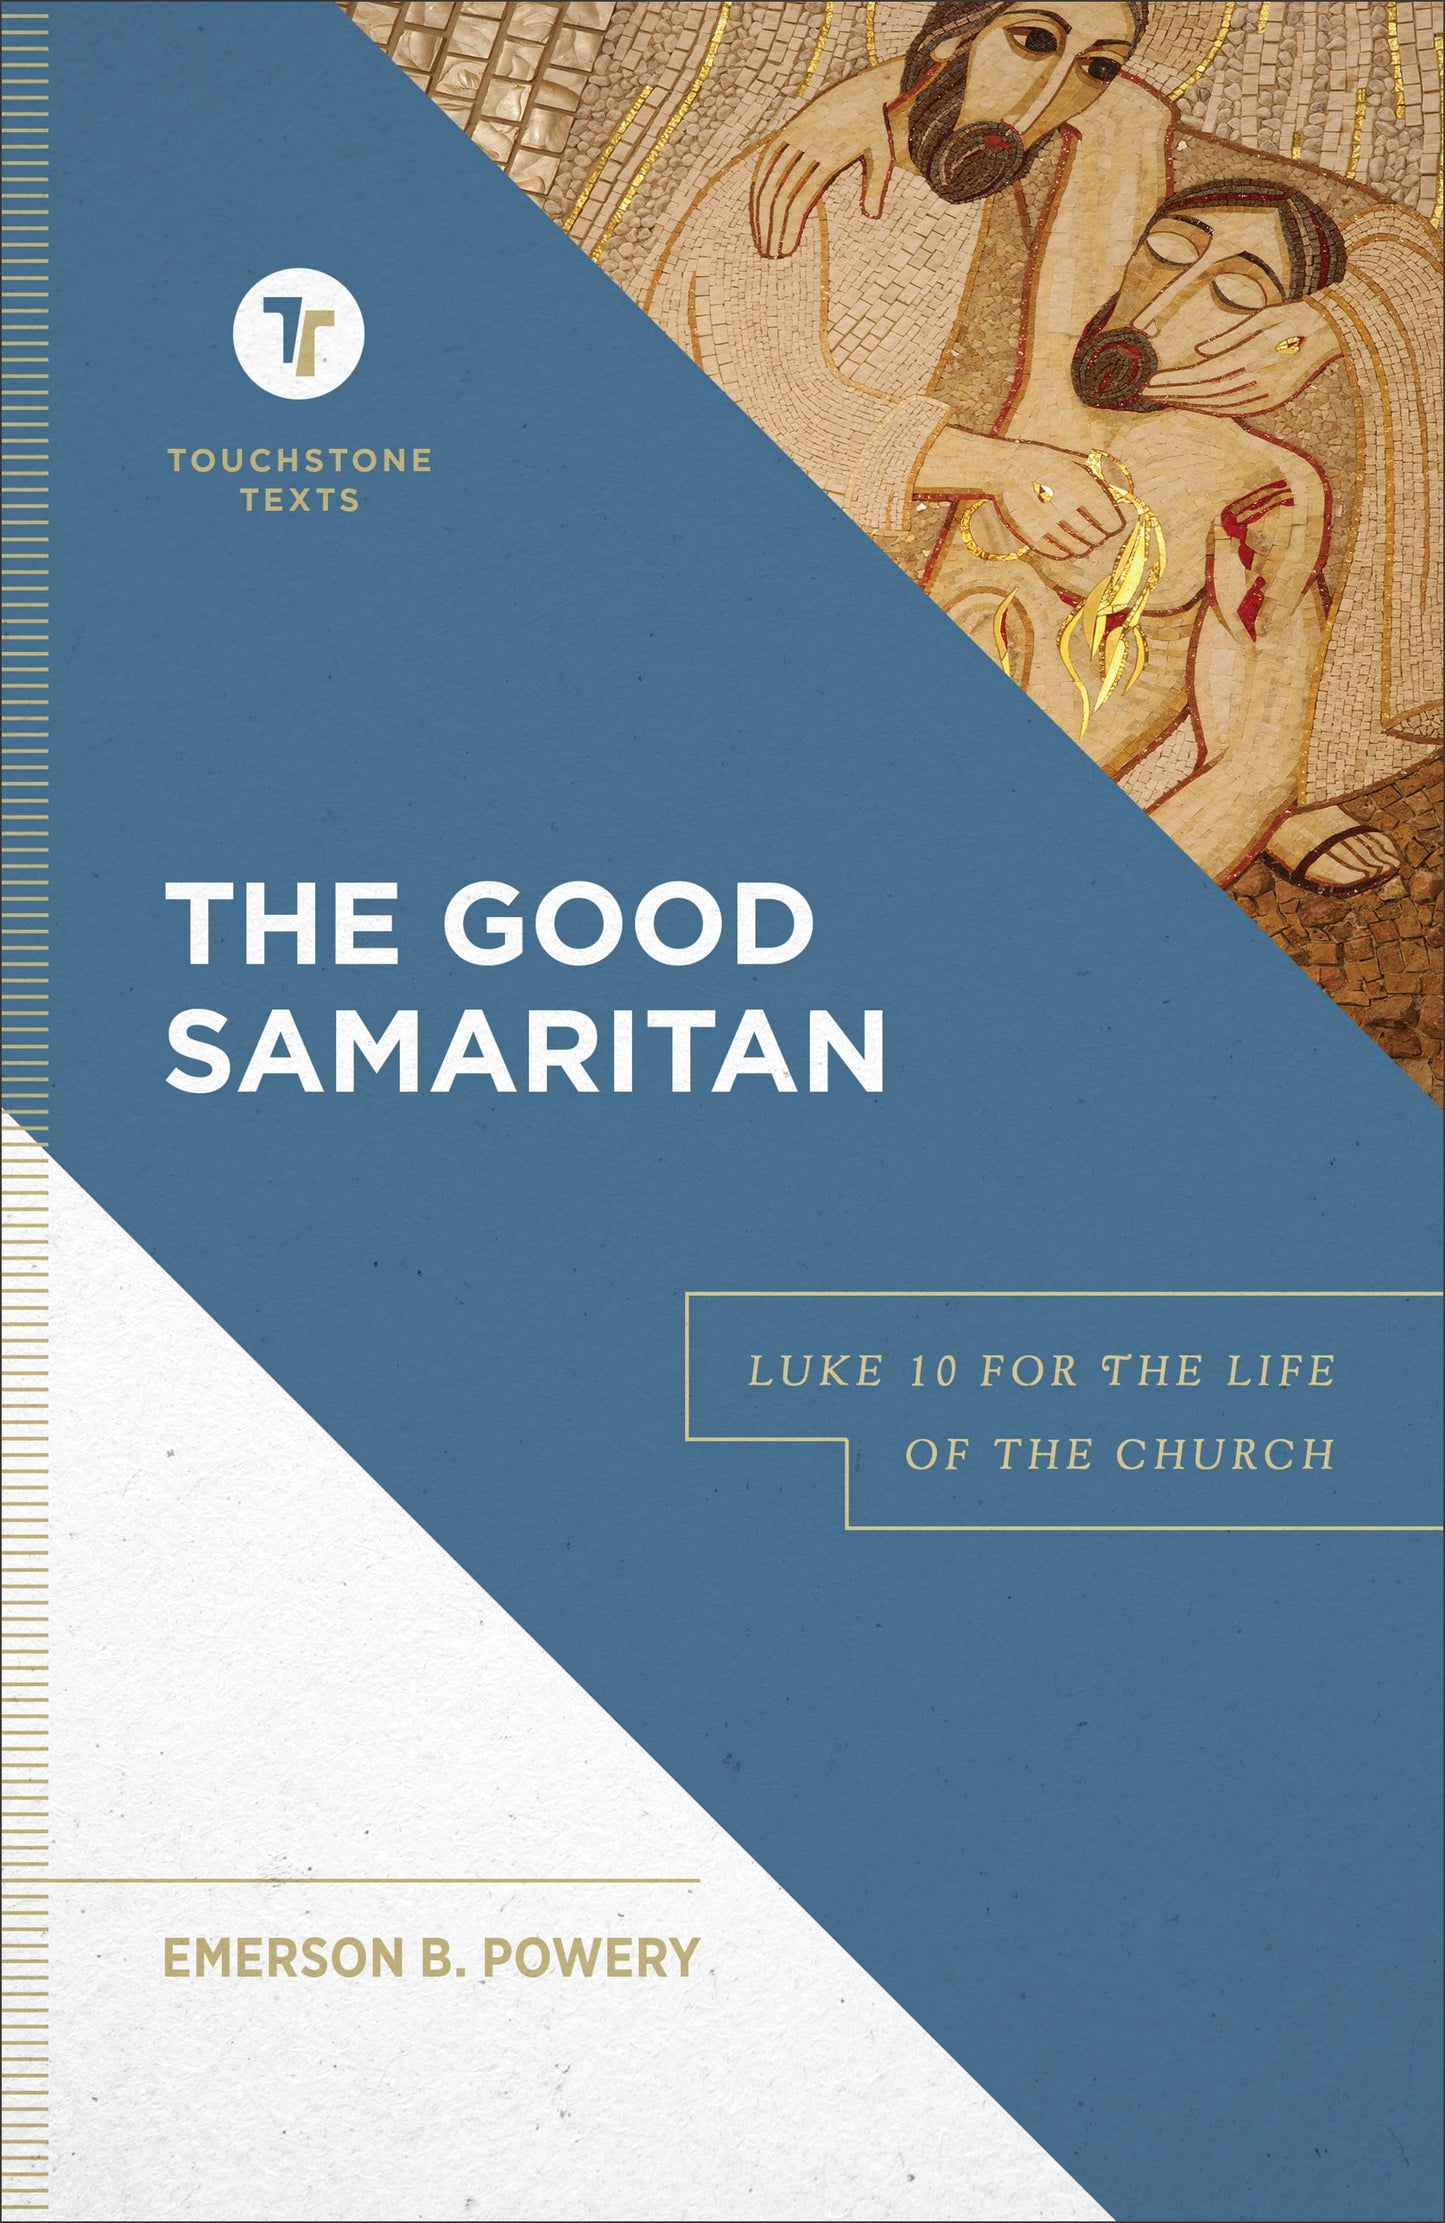 The Good Samaritan (Touchtstone Texts)